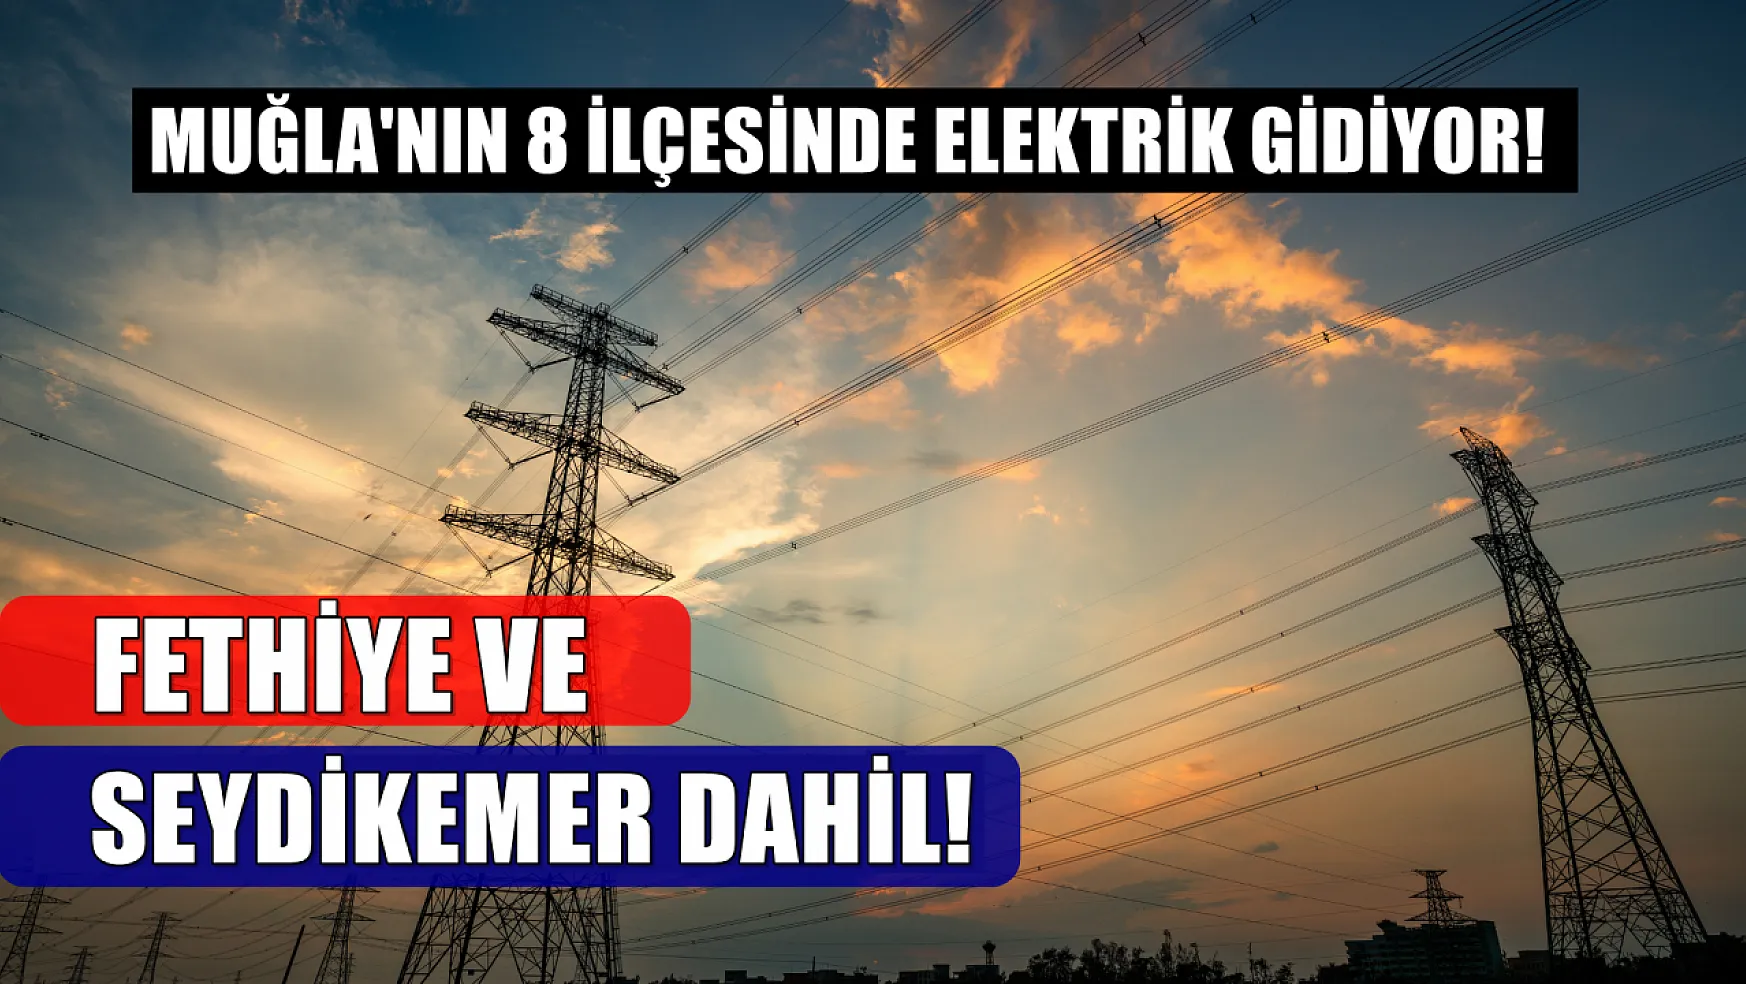 Muğla'nın 8 ilçesinde elektrik kesintisi olacak! Fethiye ve Seydikemer'de de gidecek! 16-17-18 Mart elektrik kesintisi detaylar..